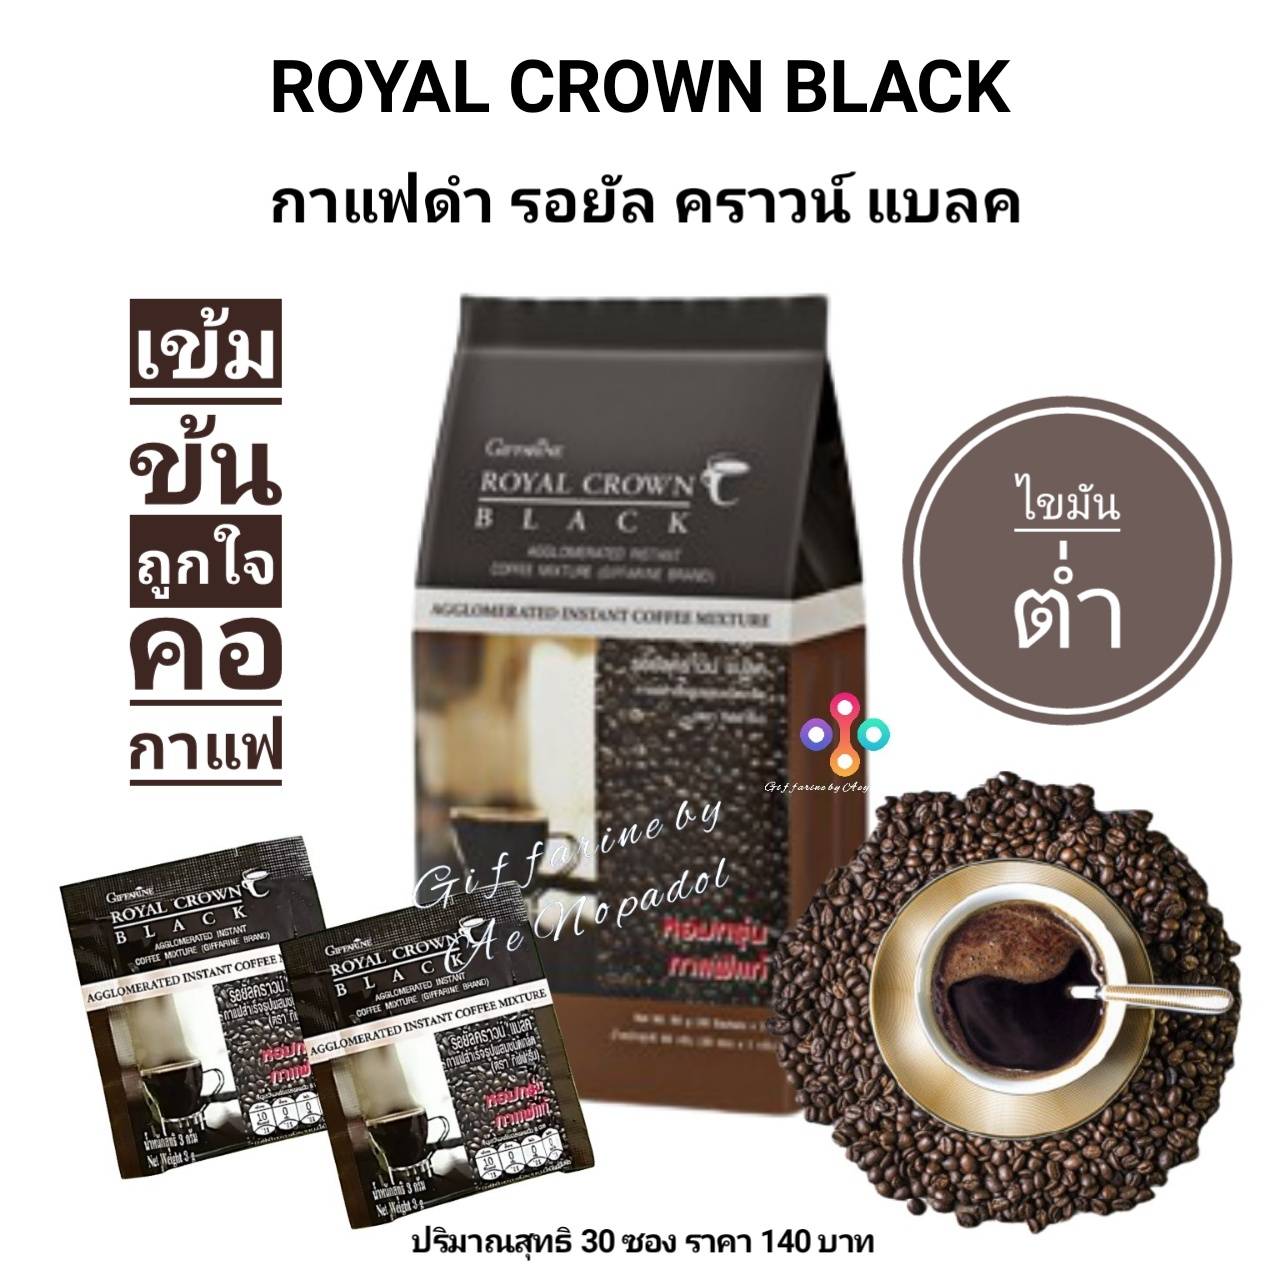 กาแฟดำ กิฟฟารีน รอยัล คราวน์ แบลค ROYAL CROWN BLACK กาแฟลดน้ำหนัก กาแฟสำหรับคนรักสุขภาพ ไขมันต่ำ หอมกรุ่นของกาแฟโรบัสต้าแท้ (1 ถุง บรรจุ 30 ซอง)